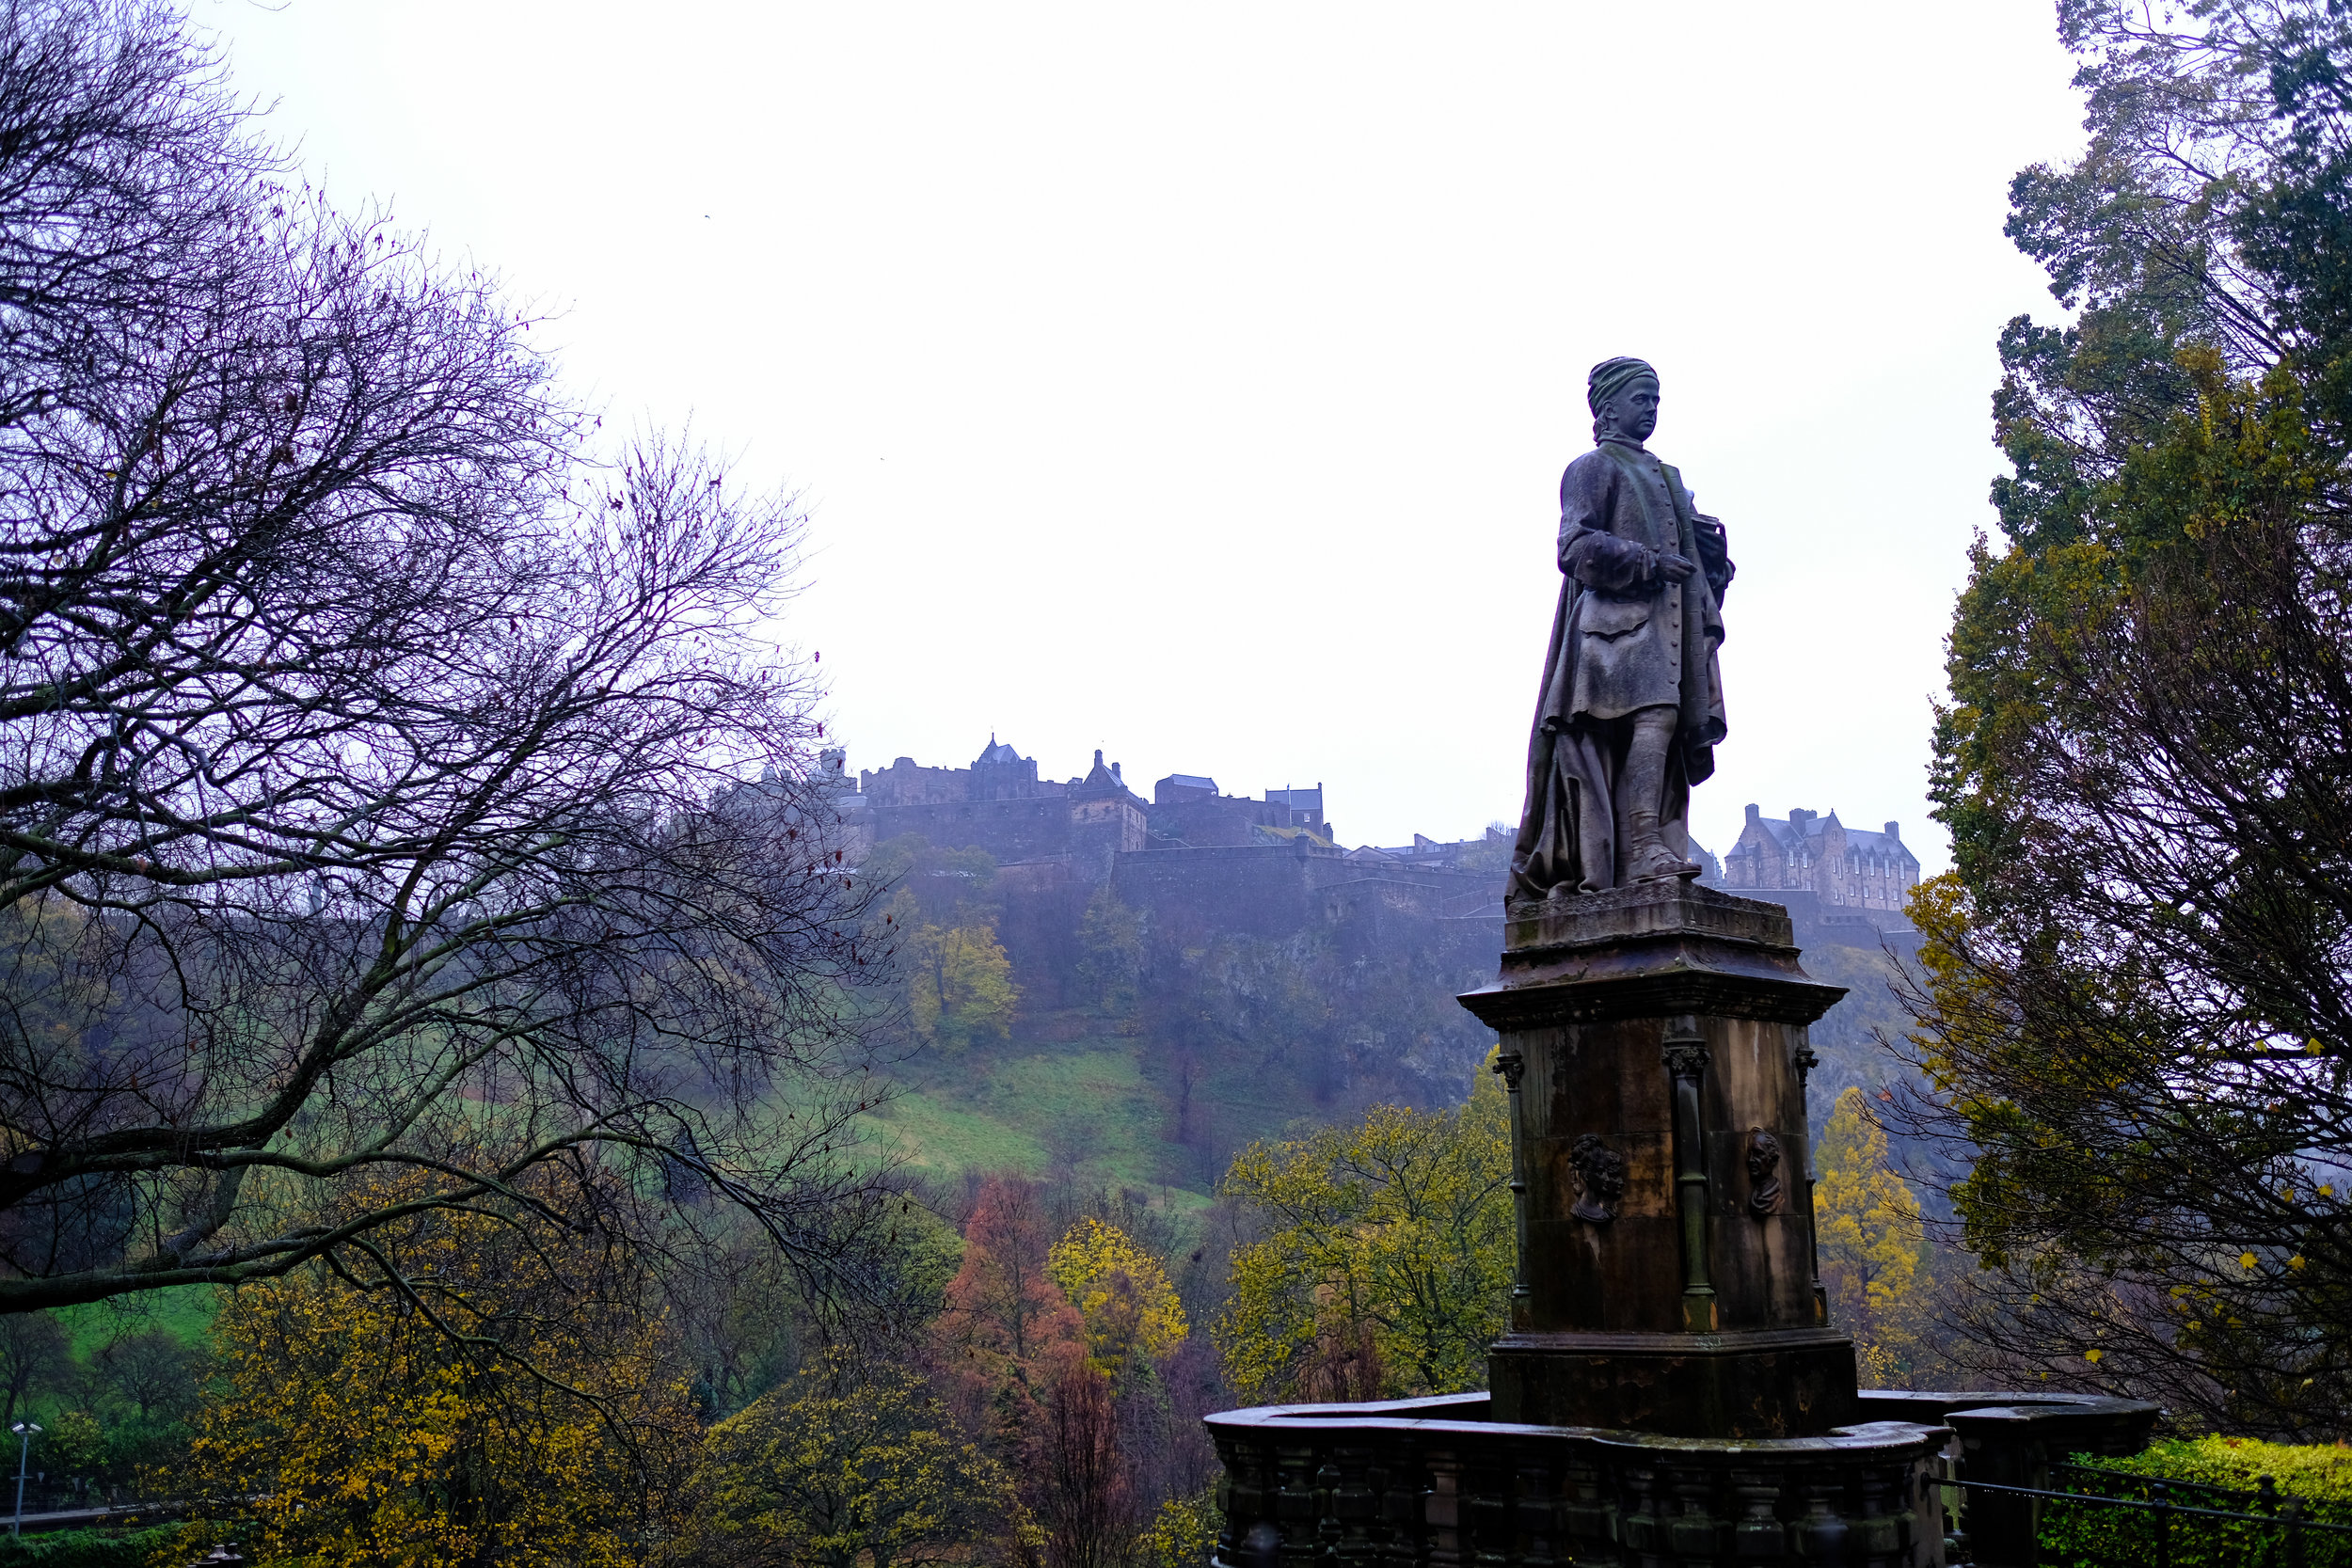  Location: Princess Gardens at Edinburgh Caste, Scotland. Date: November, 2017 | Lens: 23mm f1.4 | Camera: Fujifilm Xt-20 